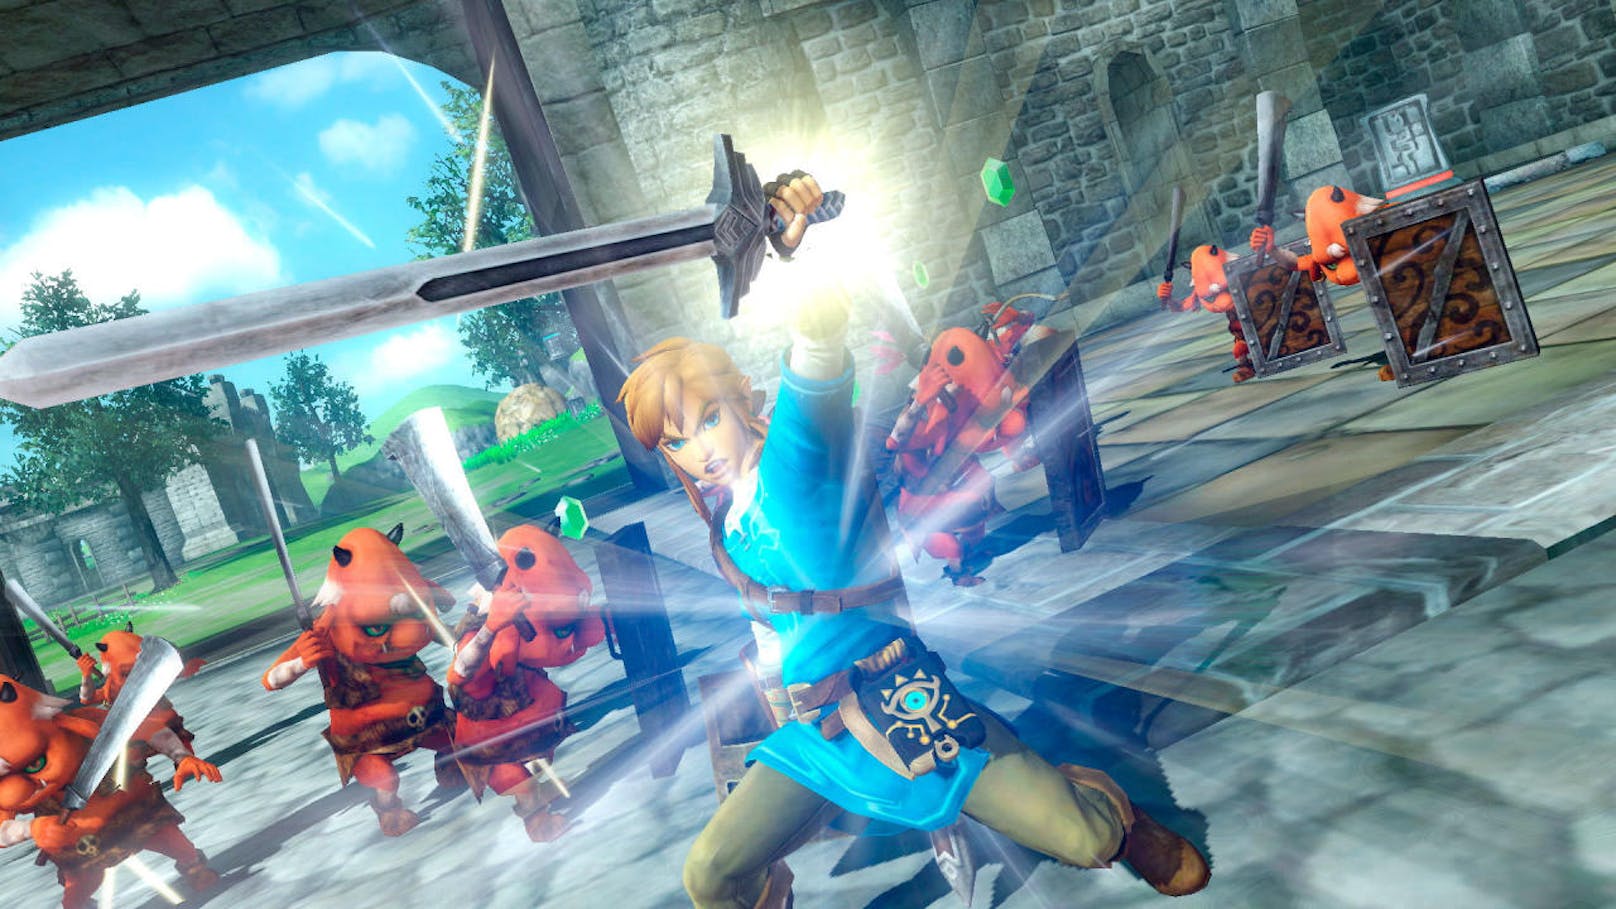 Zum bereits dritten Mal veröffentlicht Nintendo nun Hyrule Warriors. Den Anfang nahm das Game auf der gefloppten Wii U, es folgte eine Fassung für den 3DS. Jetzt vereint die "Definitive Edition" alle Inhalte dieser Versionen auf Nintendo Switch.